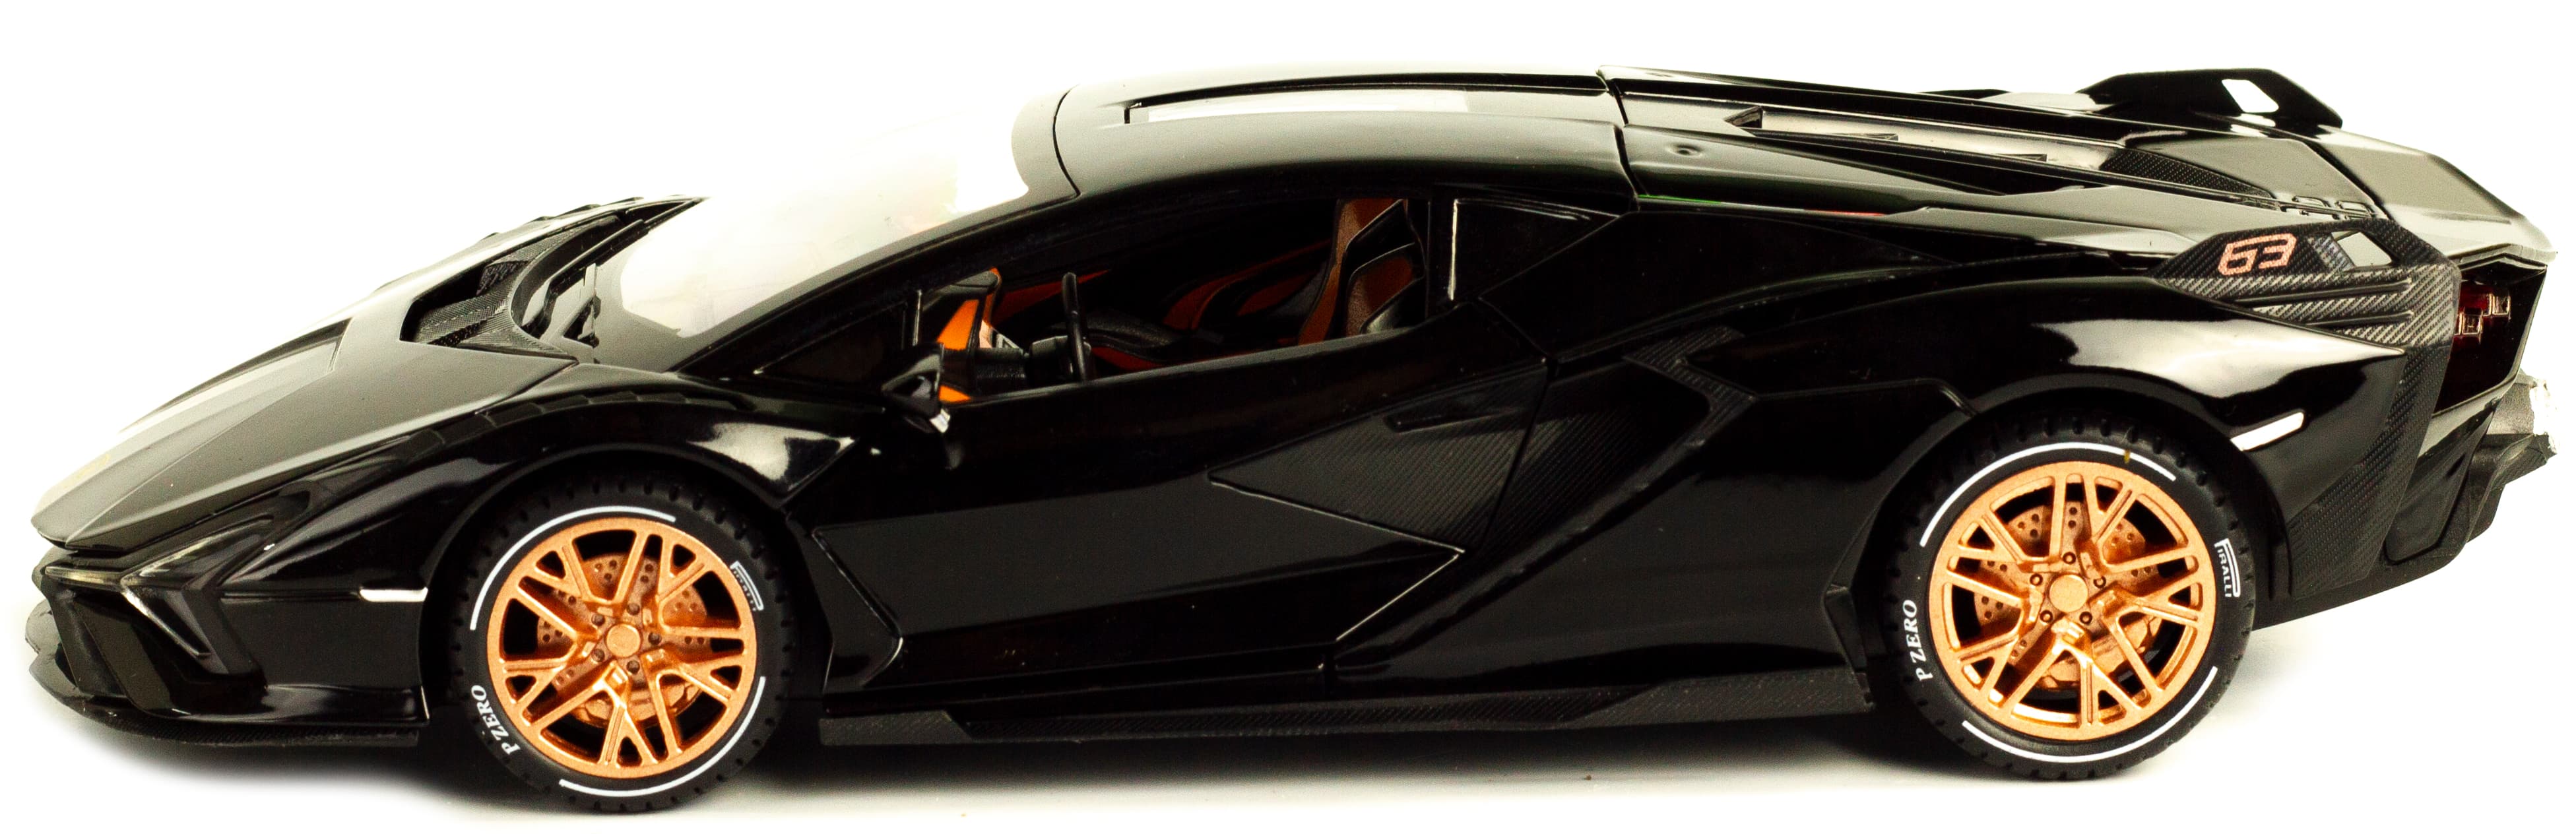 Металлическая машинка Che Zhi 1:24 «Lamborghini Sian» CZ129A, 21 см. инерционная, свет, звук / Микс